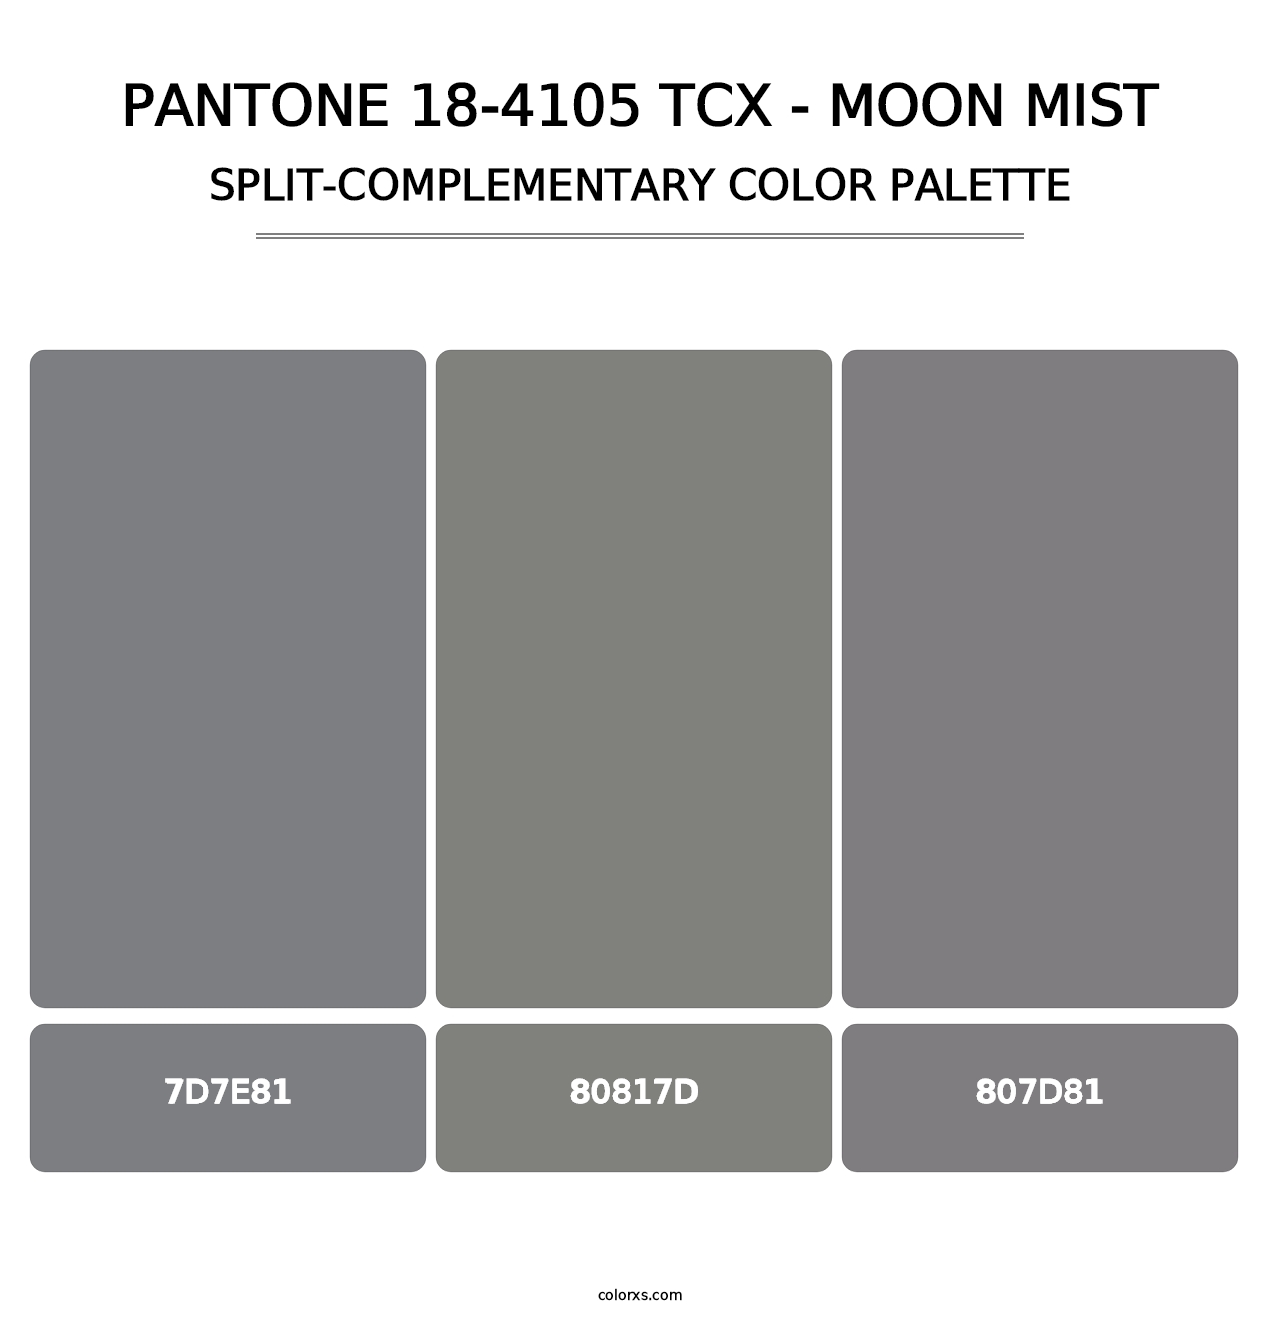 PANTONE 18-4105 TCX - Moon Mist - Split-Complementary Color Palette